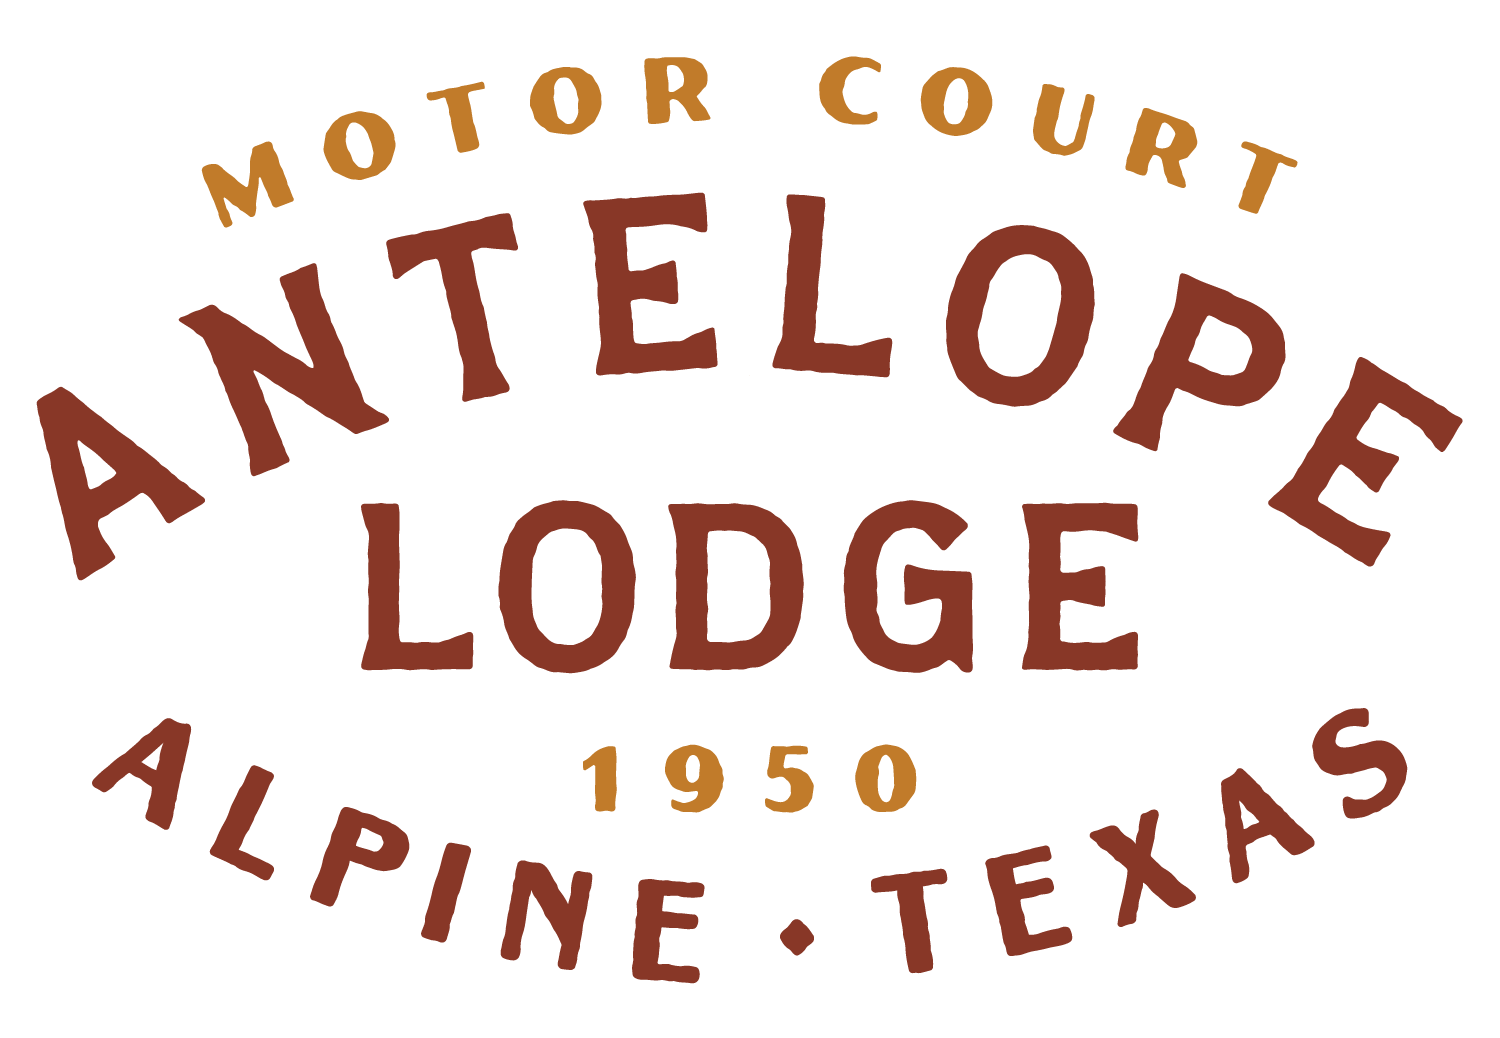 Antelope Lodge